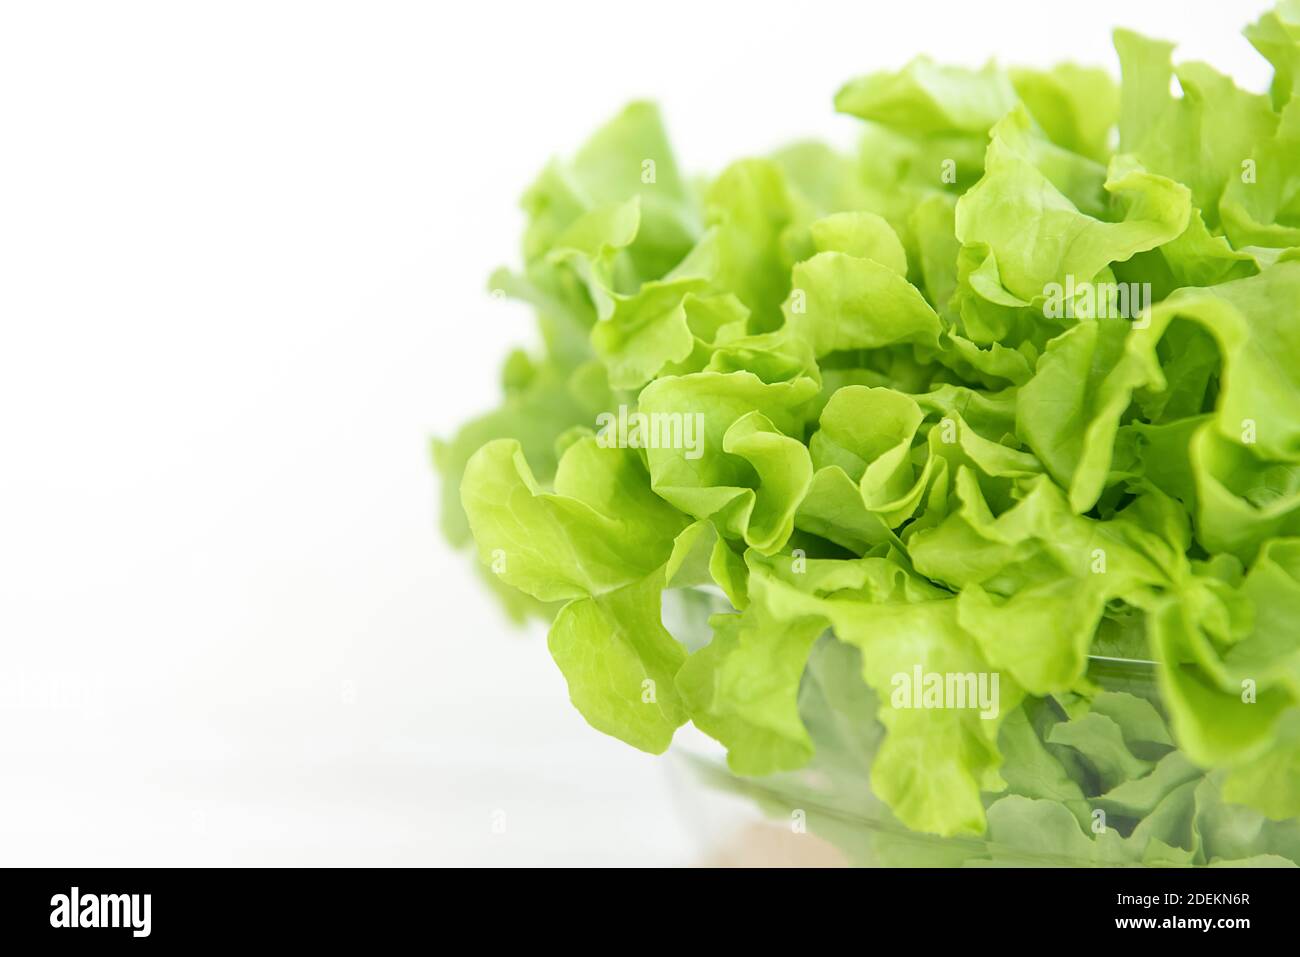 Nahaufnahme von frischen Bio gesunde grüne Eiche Salat Gemüse in einer Glasschüssel auf weißem Tisch, bereit, als Salat oder kochen zu essen Stockfoto